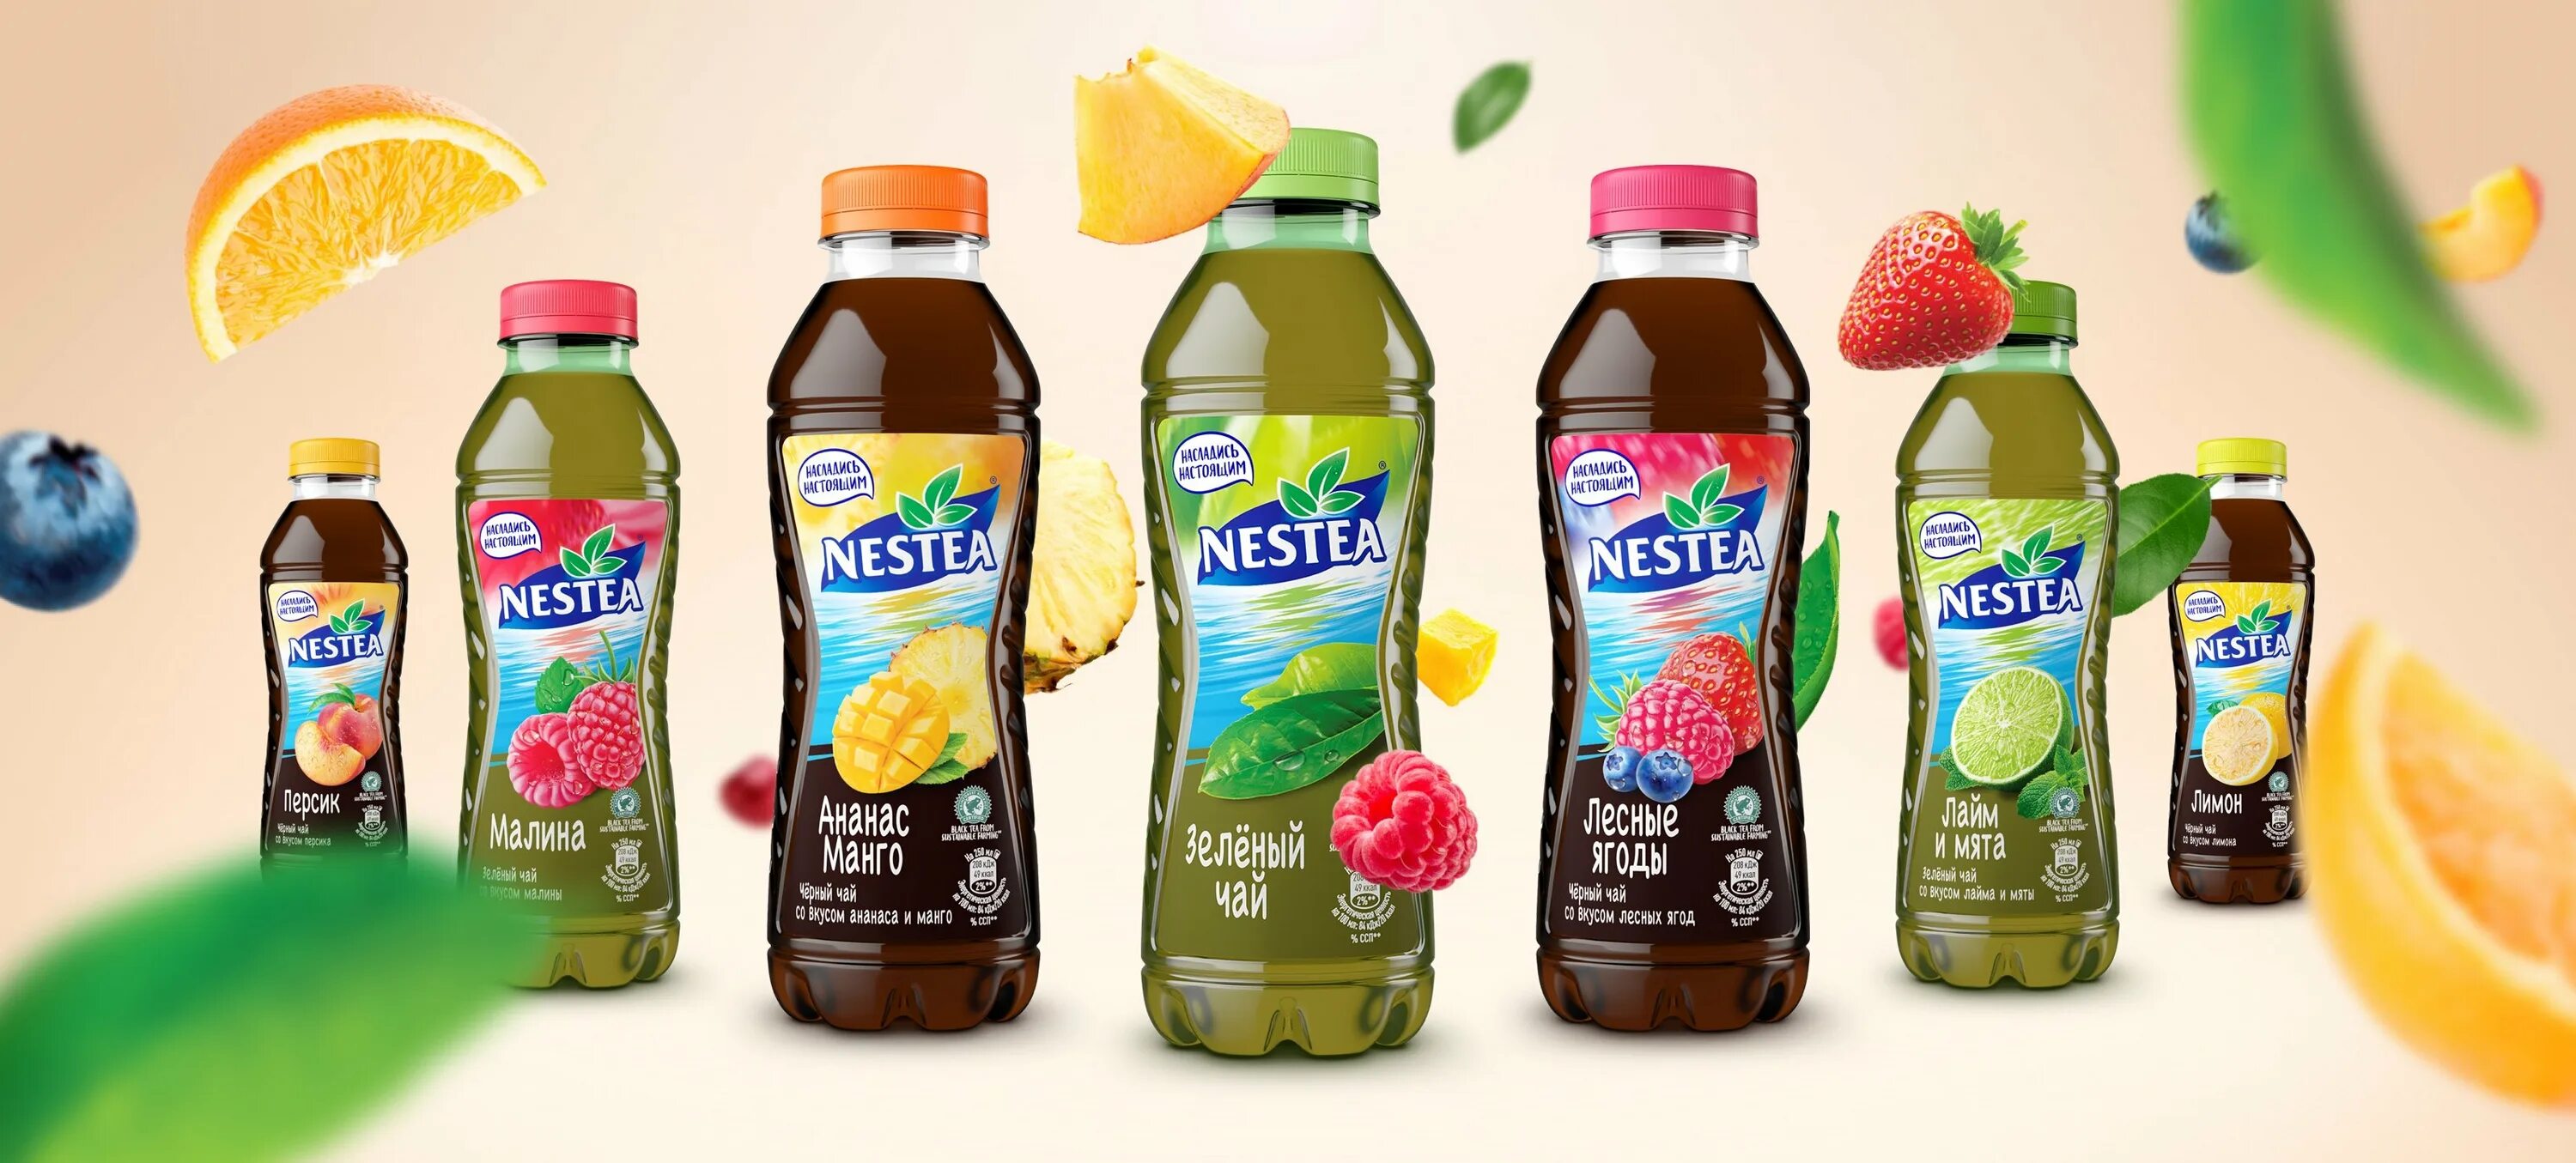 Холодный чай Nestea. Холодный чай Nestea производитель. Nestea 2021. Липтон холодный чай ассортимент.